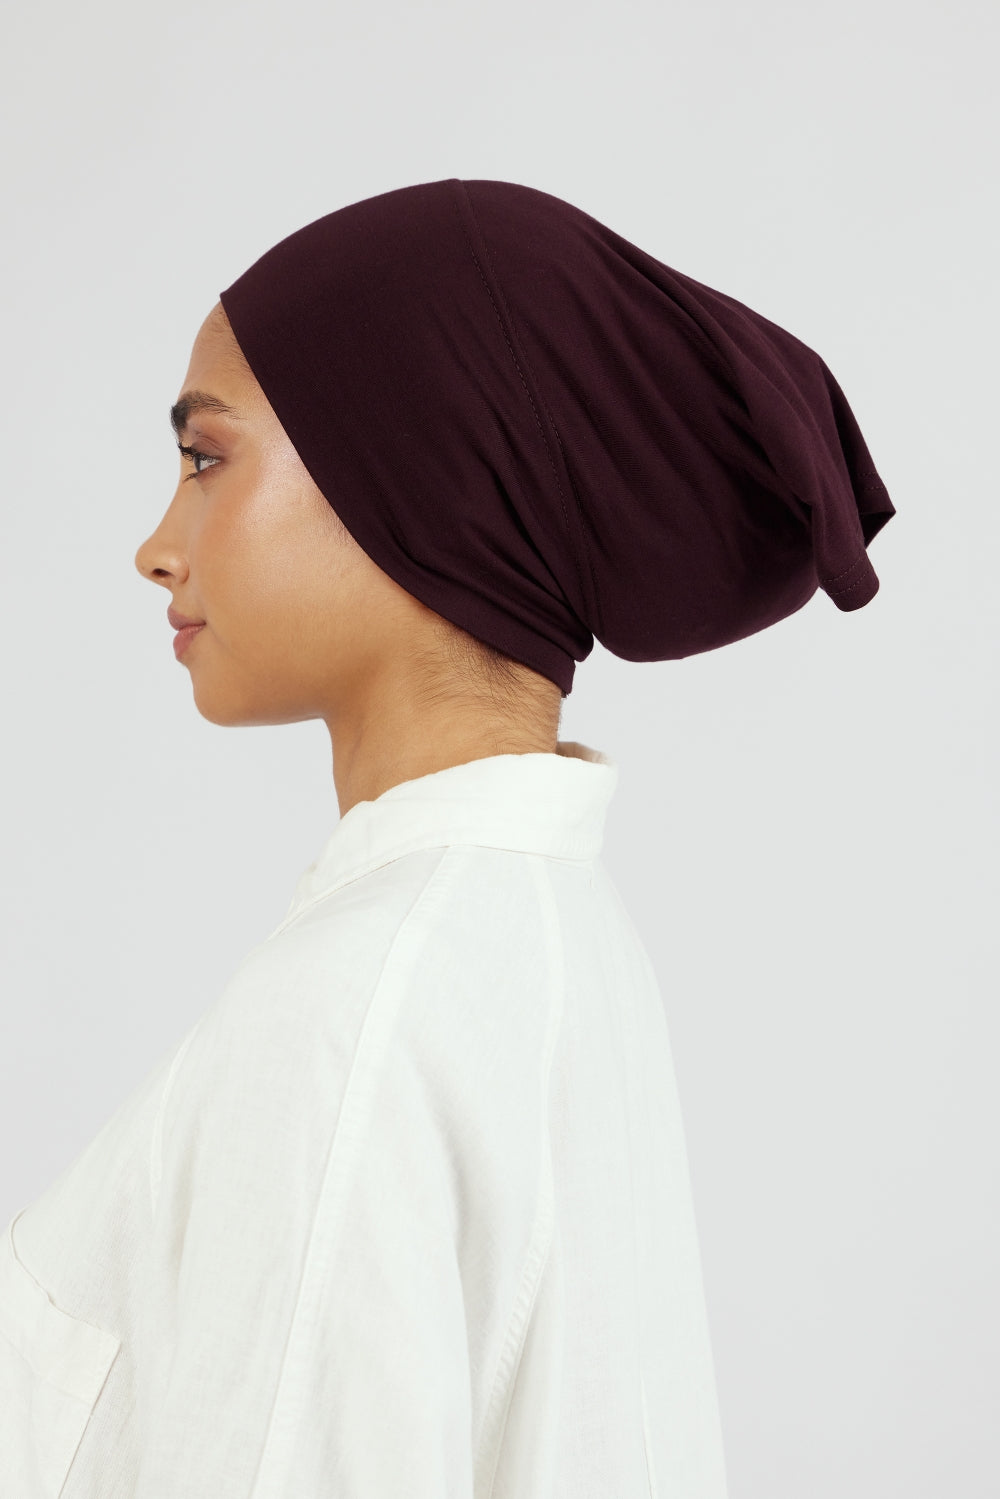 US - Matching Chiffon Hijab Set - Deep Plum